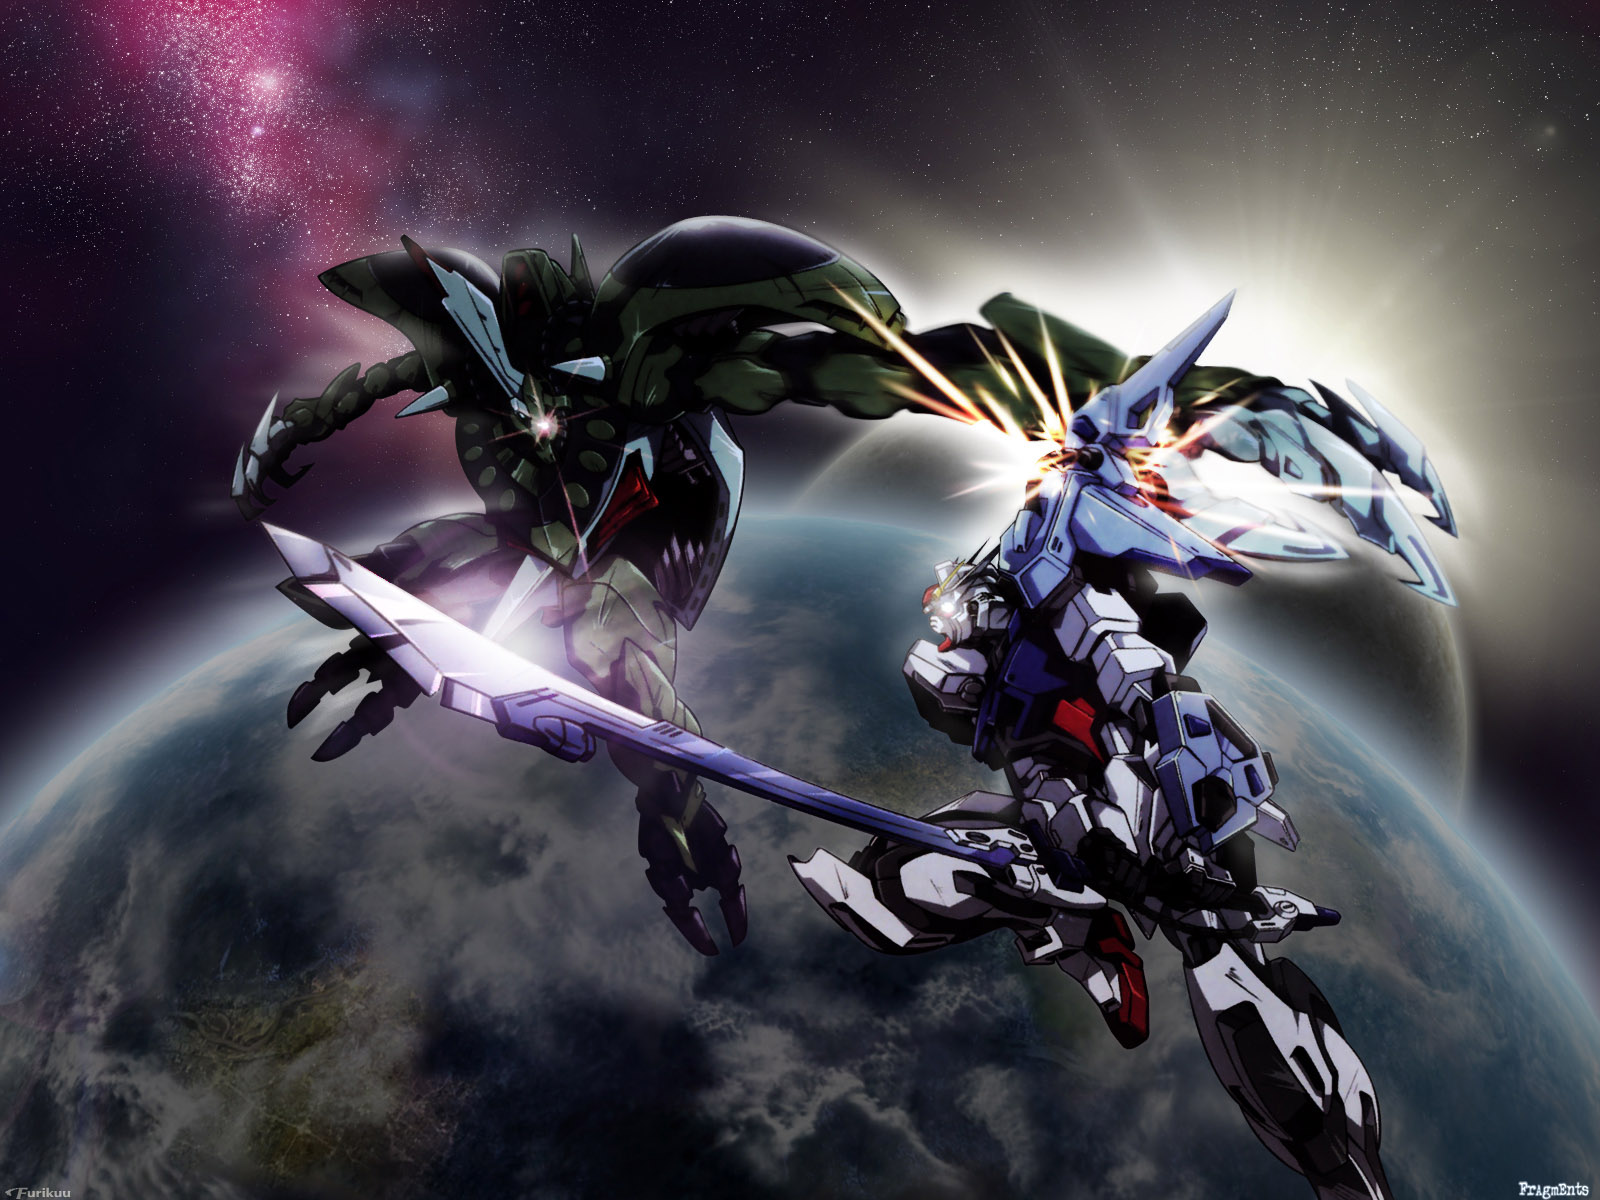 Ảnh Gundam ngầu 4K miễn phí để hình nền PC Laptop điện thoại  nShop  Game   Hobby